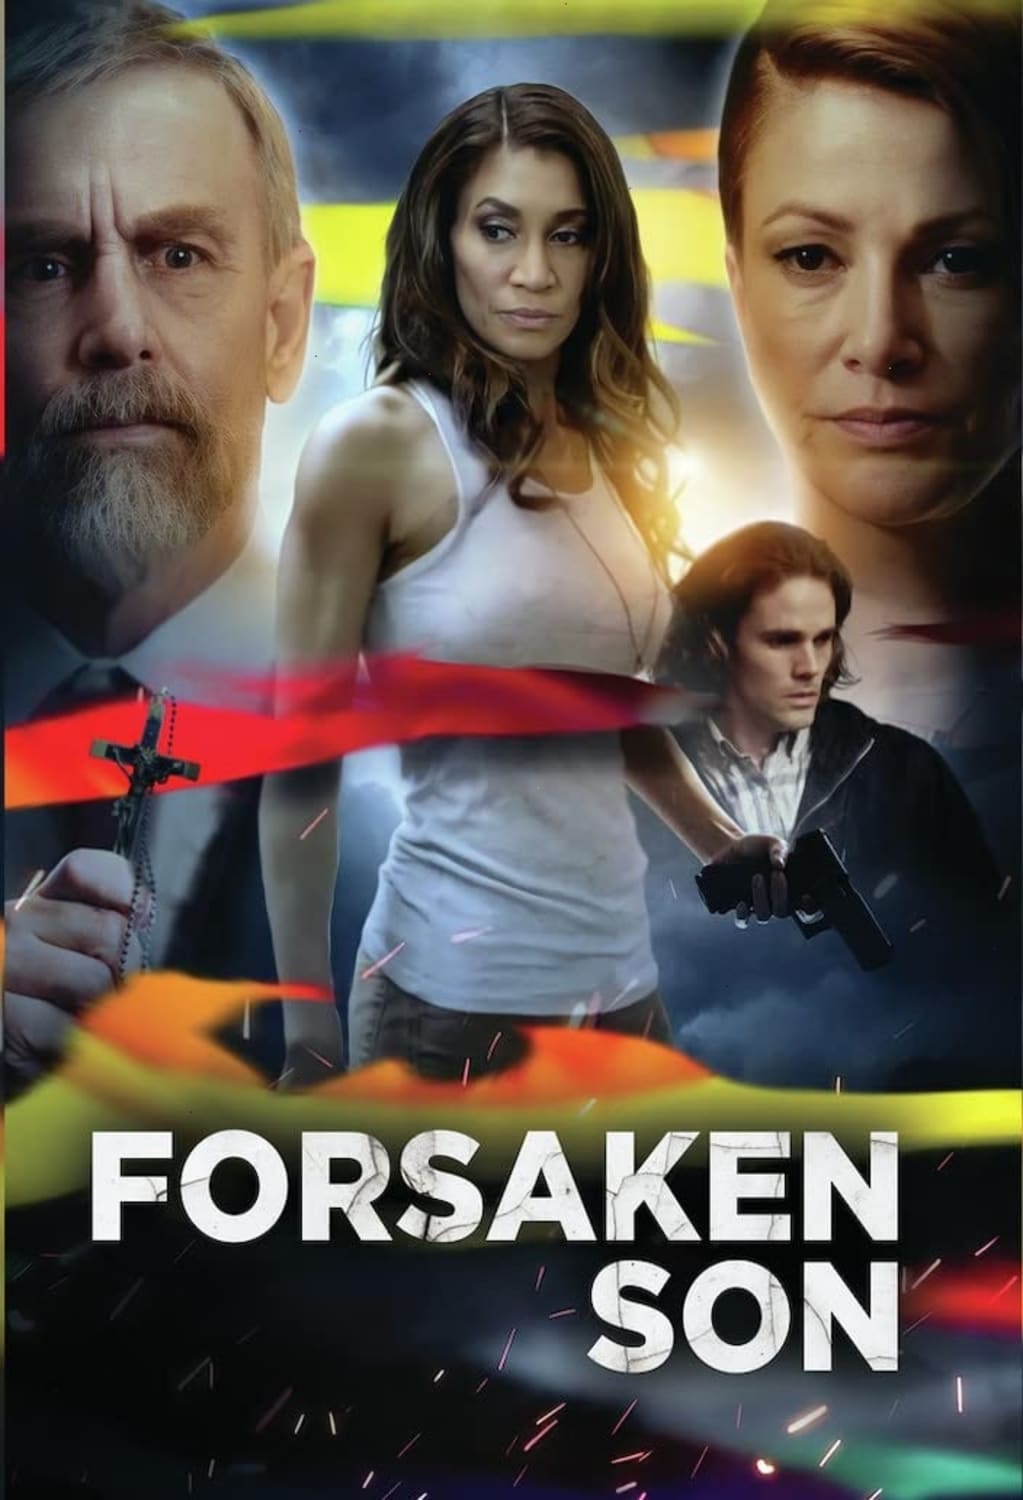 Forsaken Son (DVD) on MovieShack